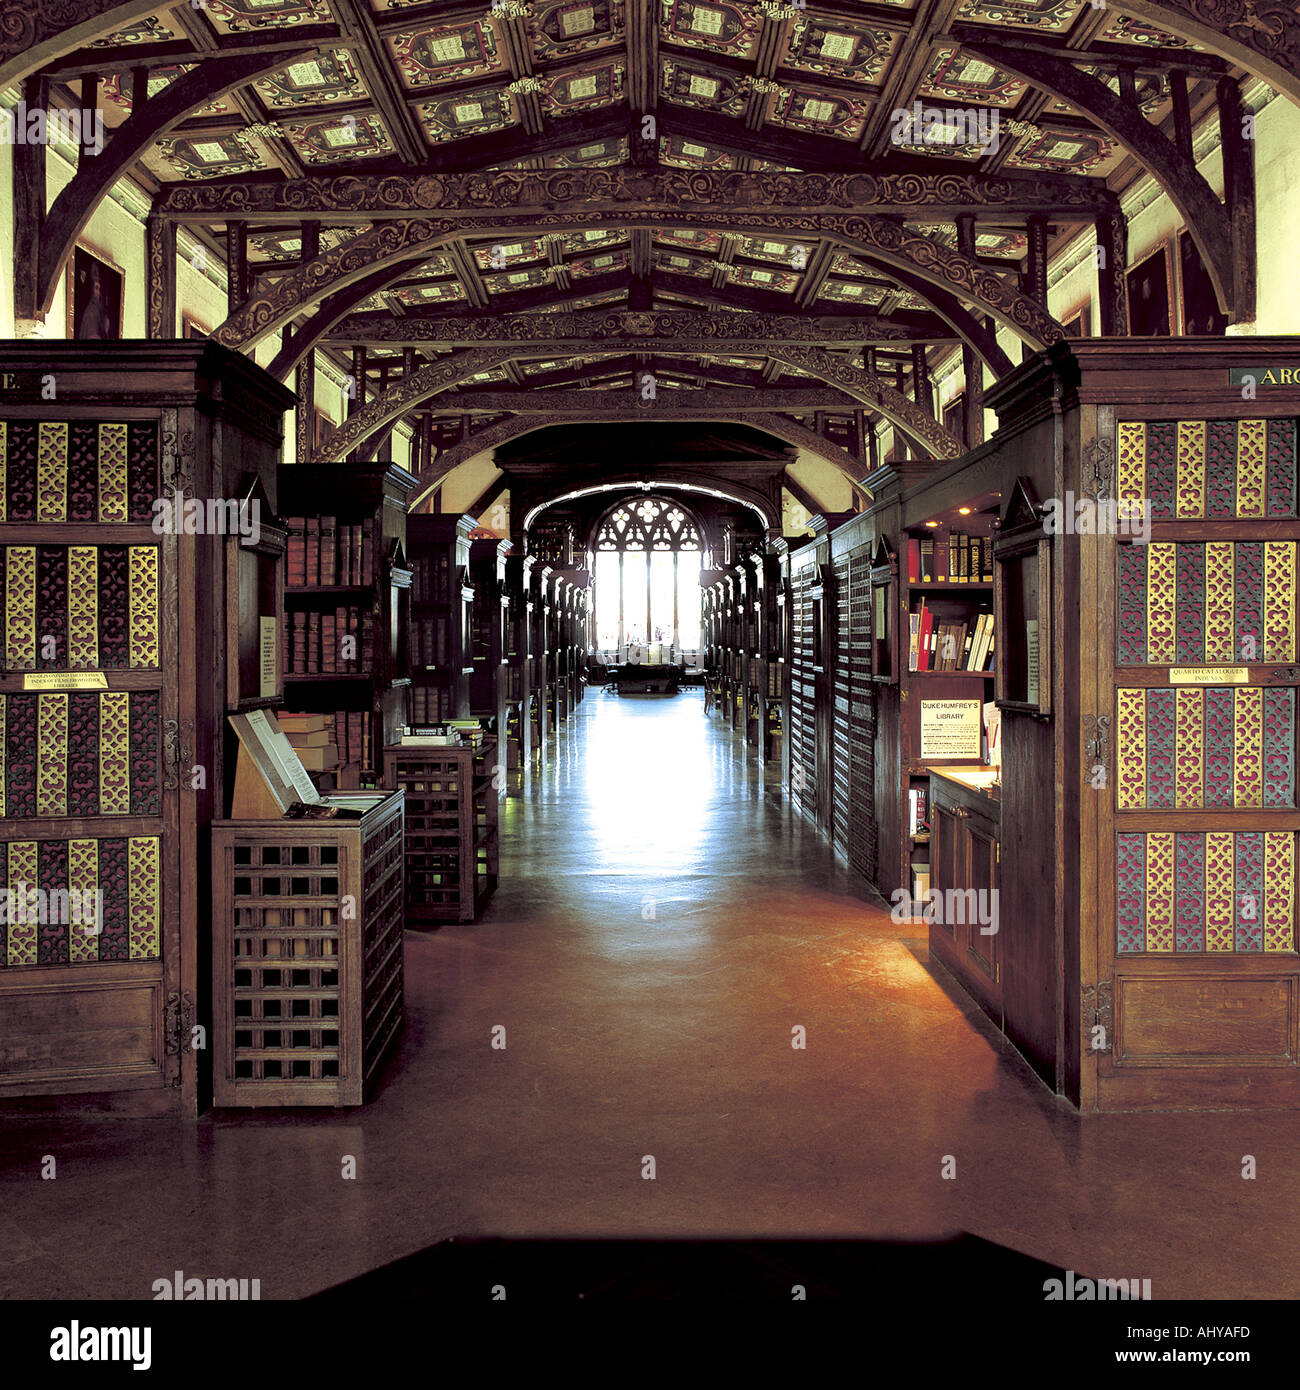 film Archives - Duke University Libraries Blogs